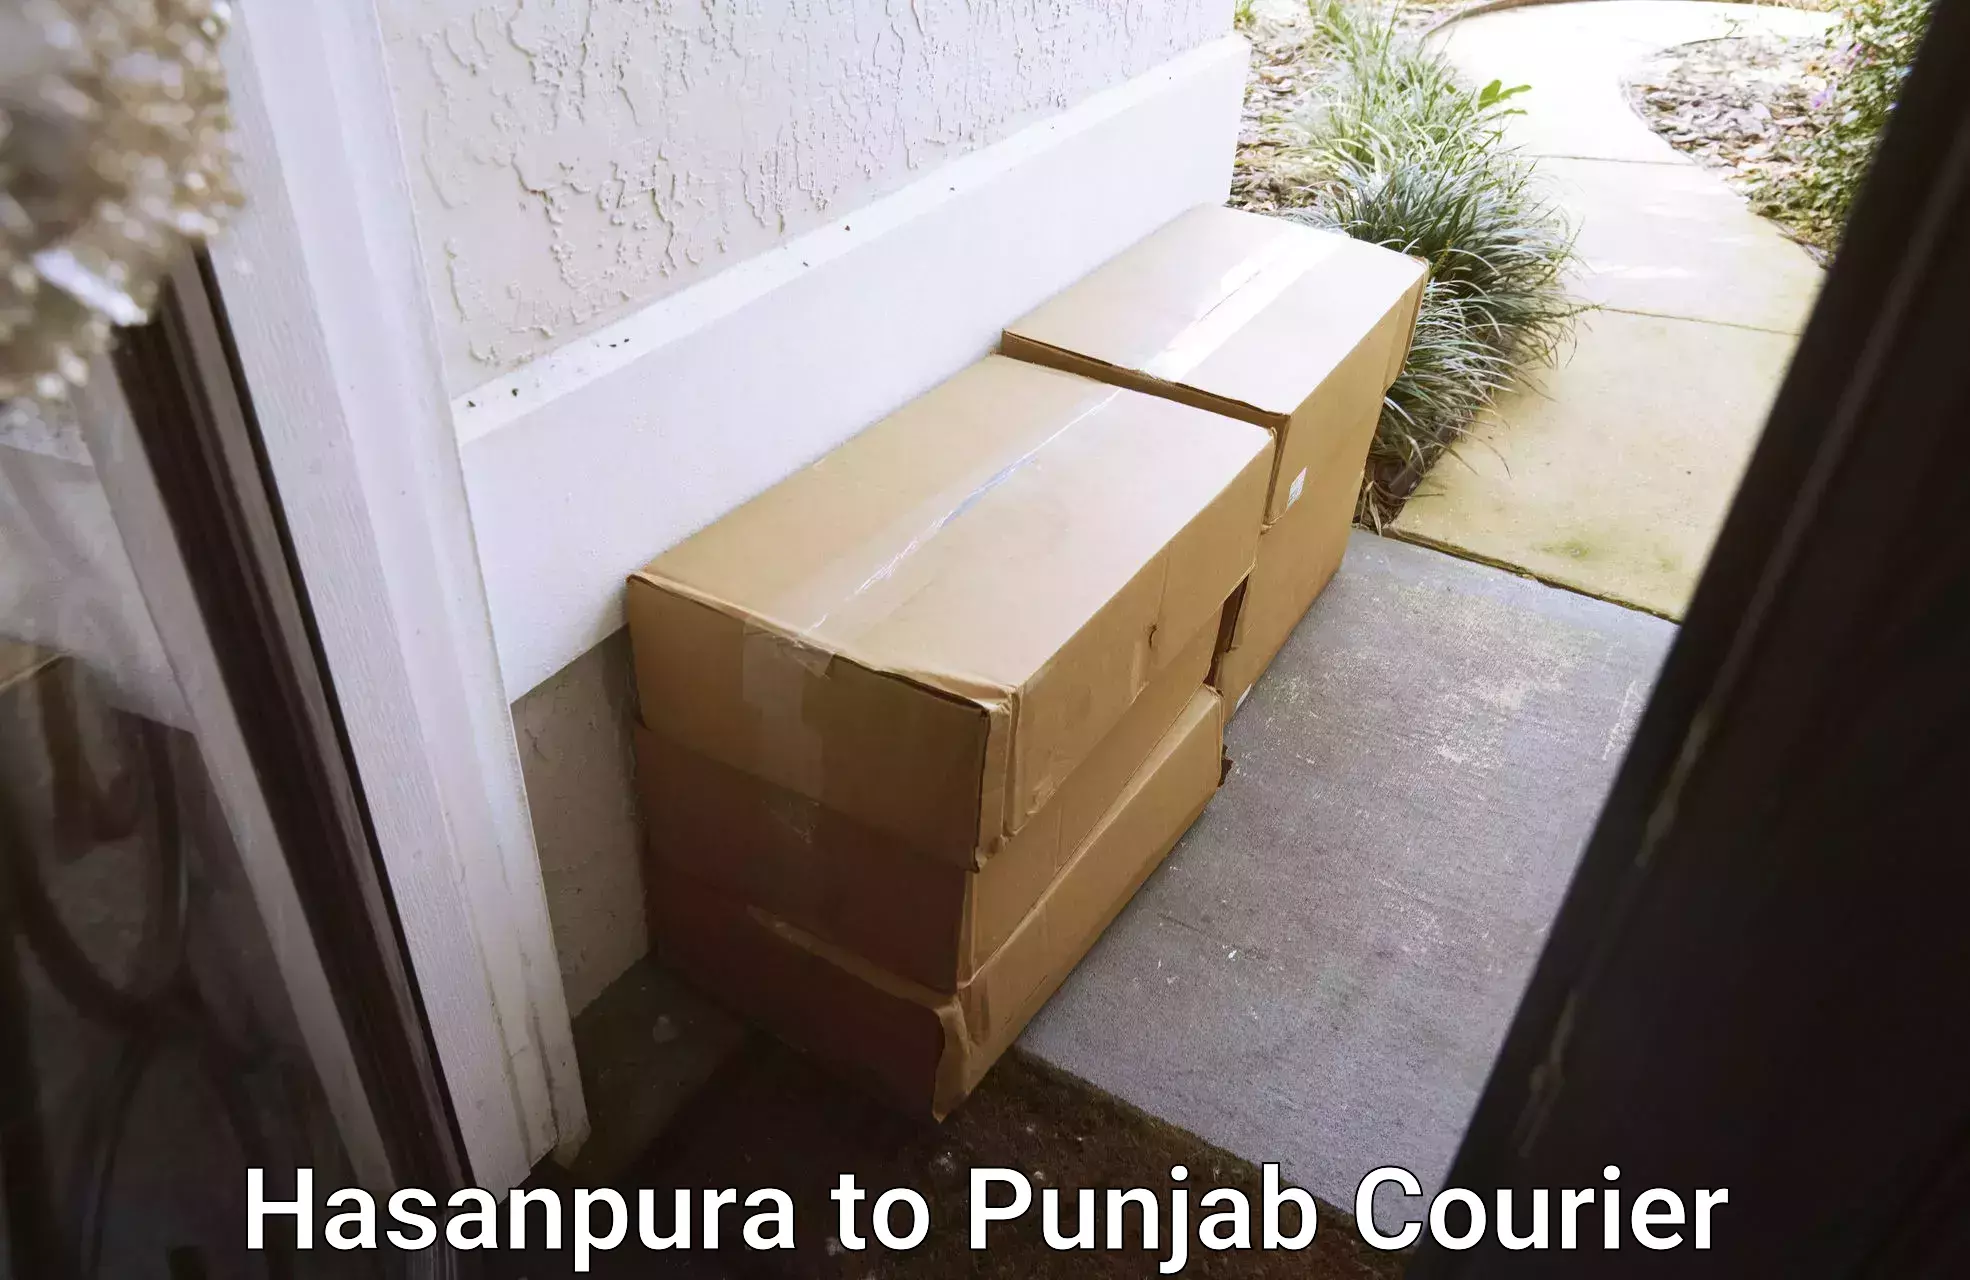 Furniture moving service Hasanpura to Punjab